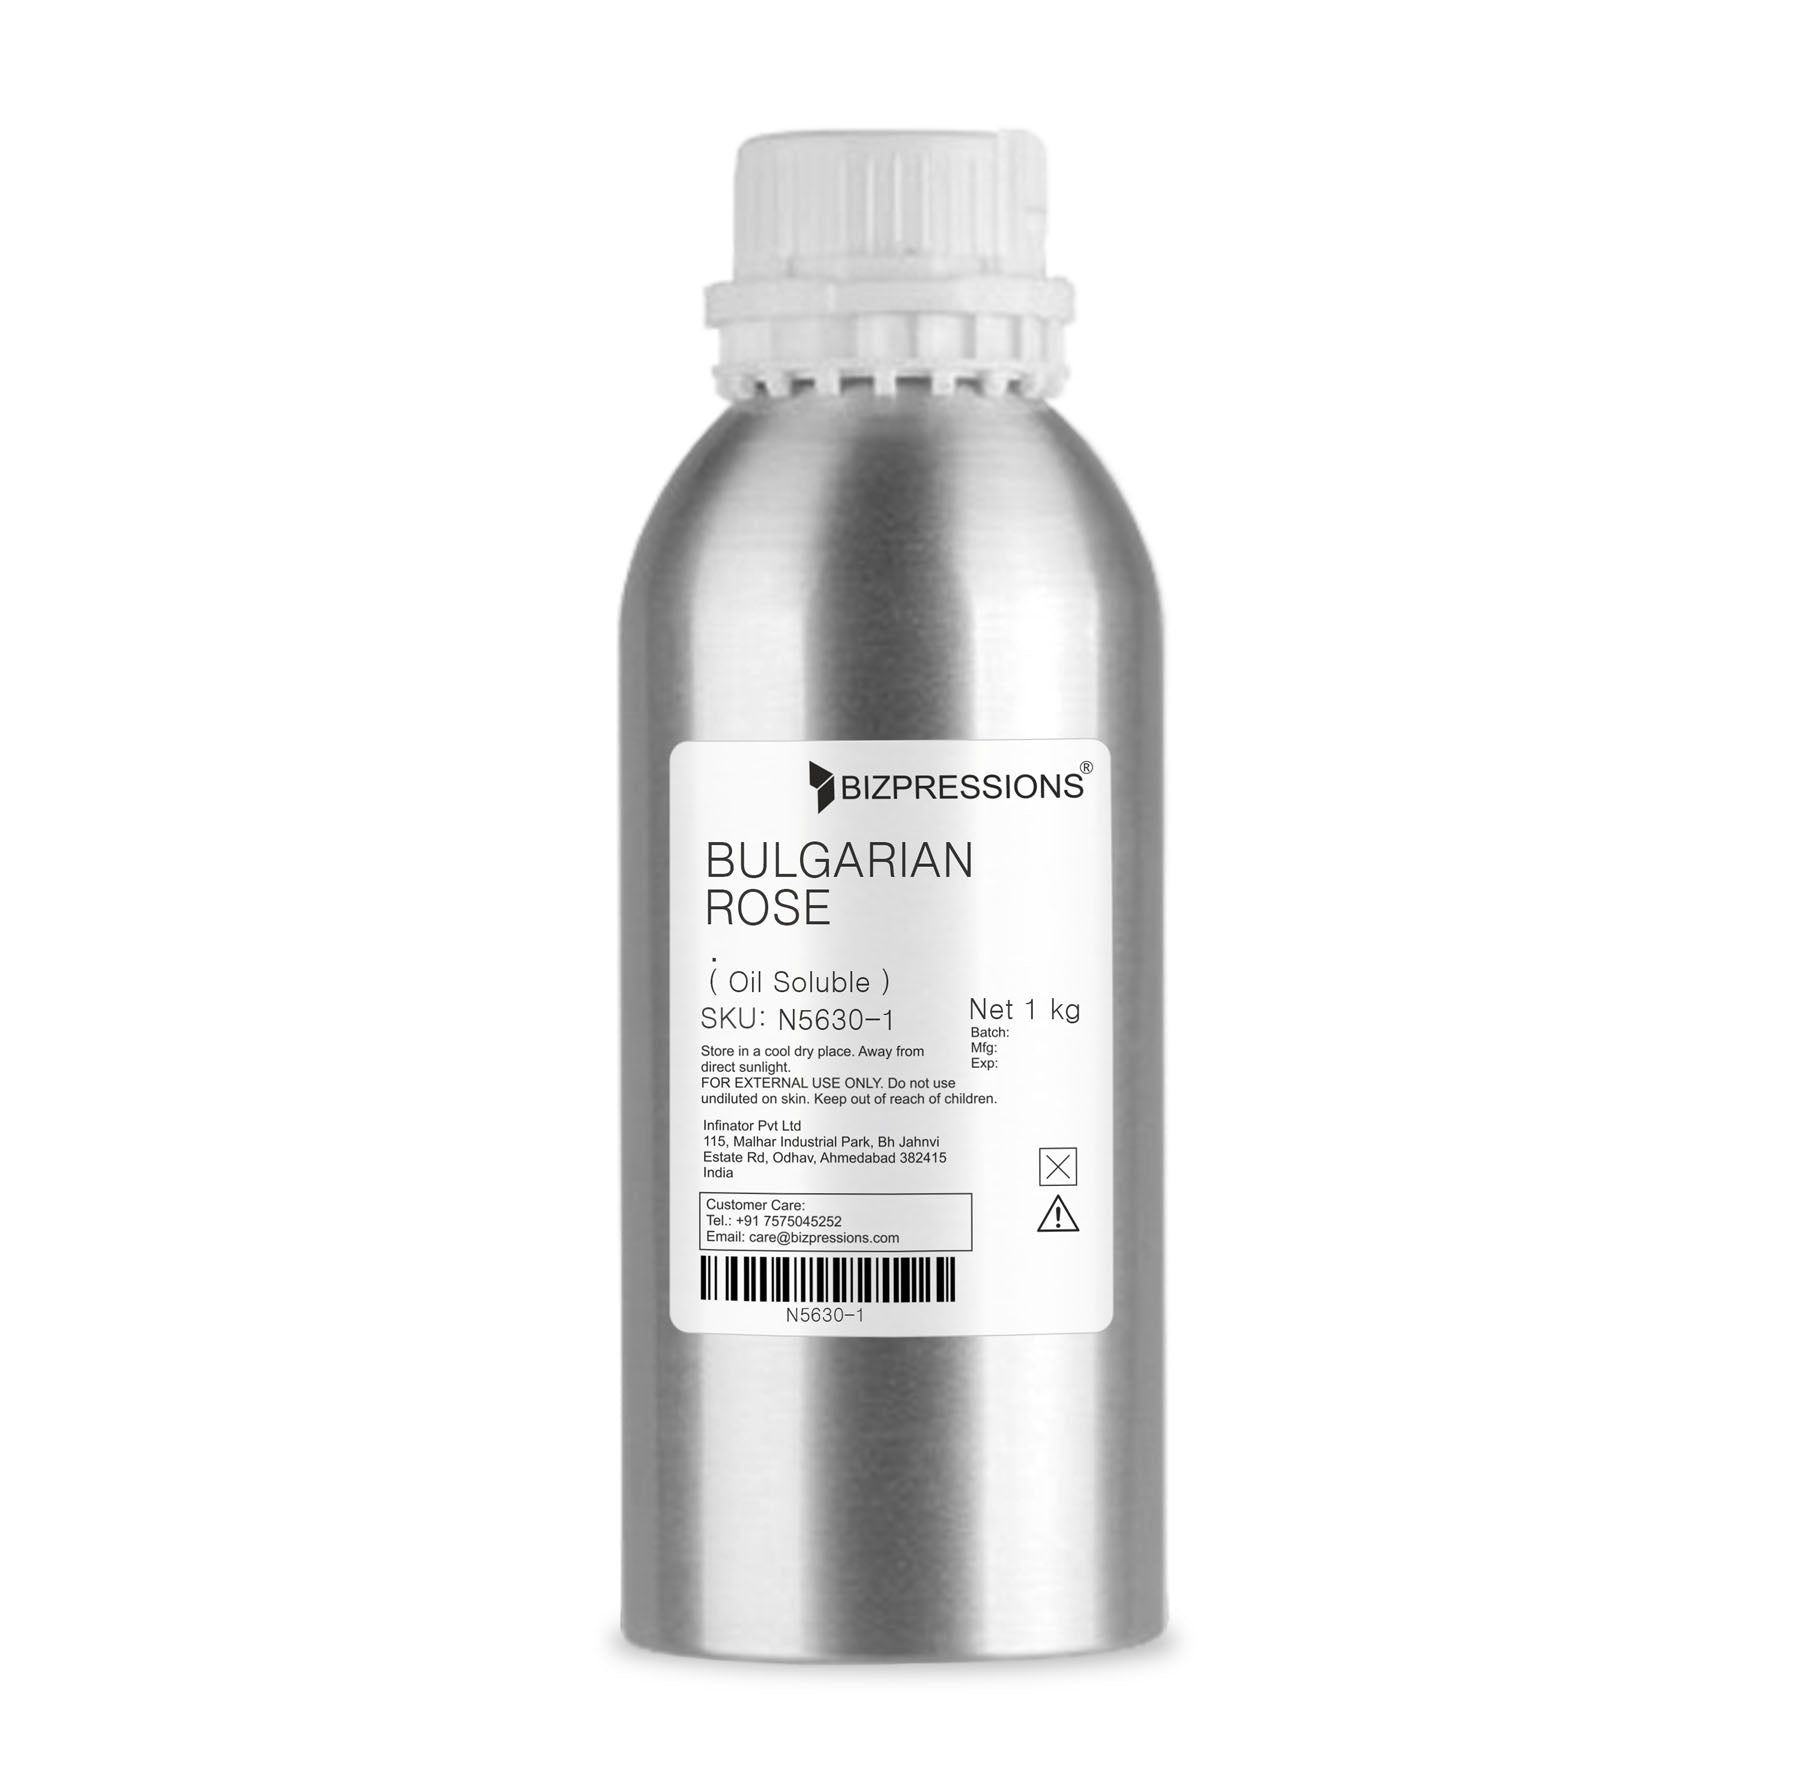 BULGARIAN ROSE - Fragrance ( Oil Soluble ) - 1 kg